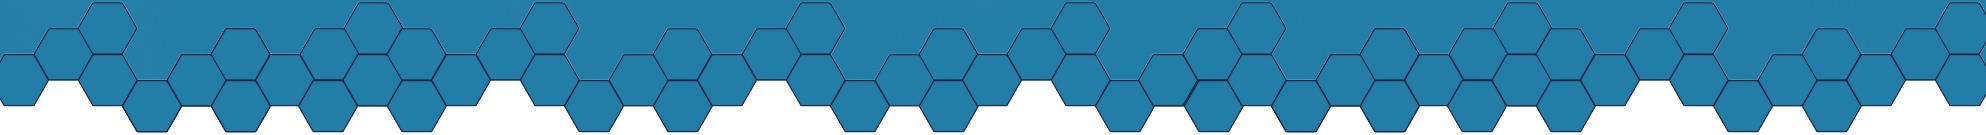 light-blue-hexagon-pattern